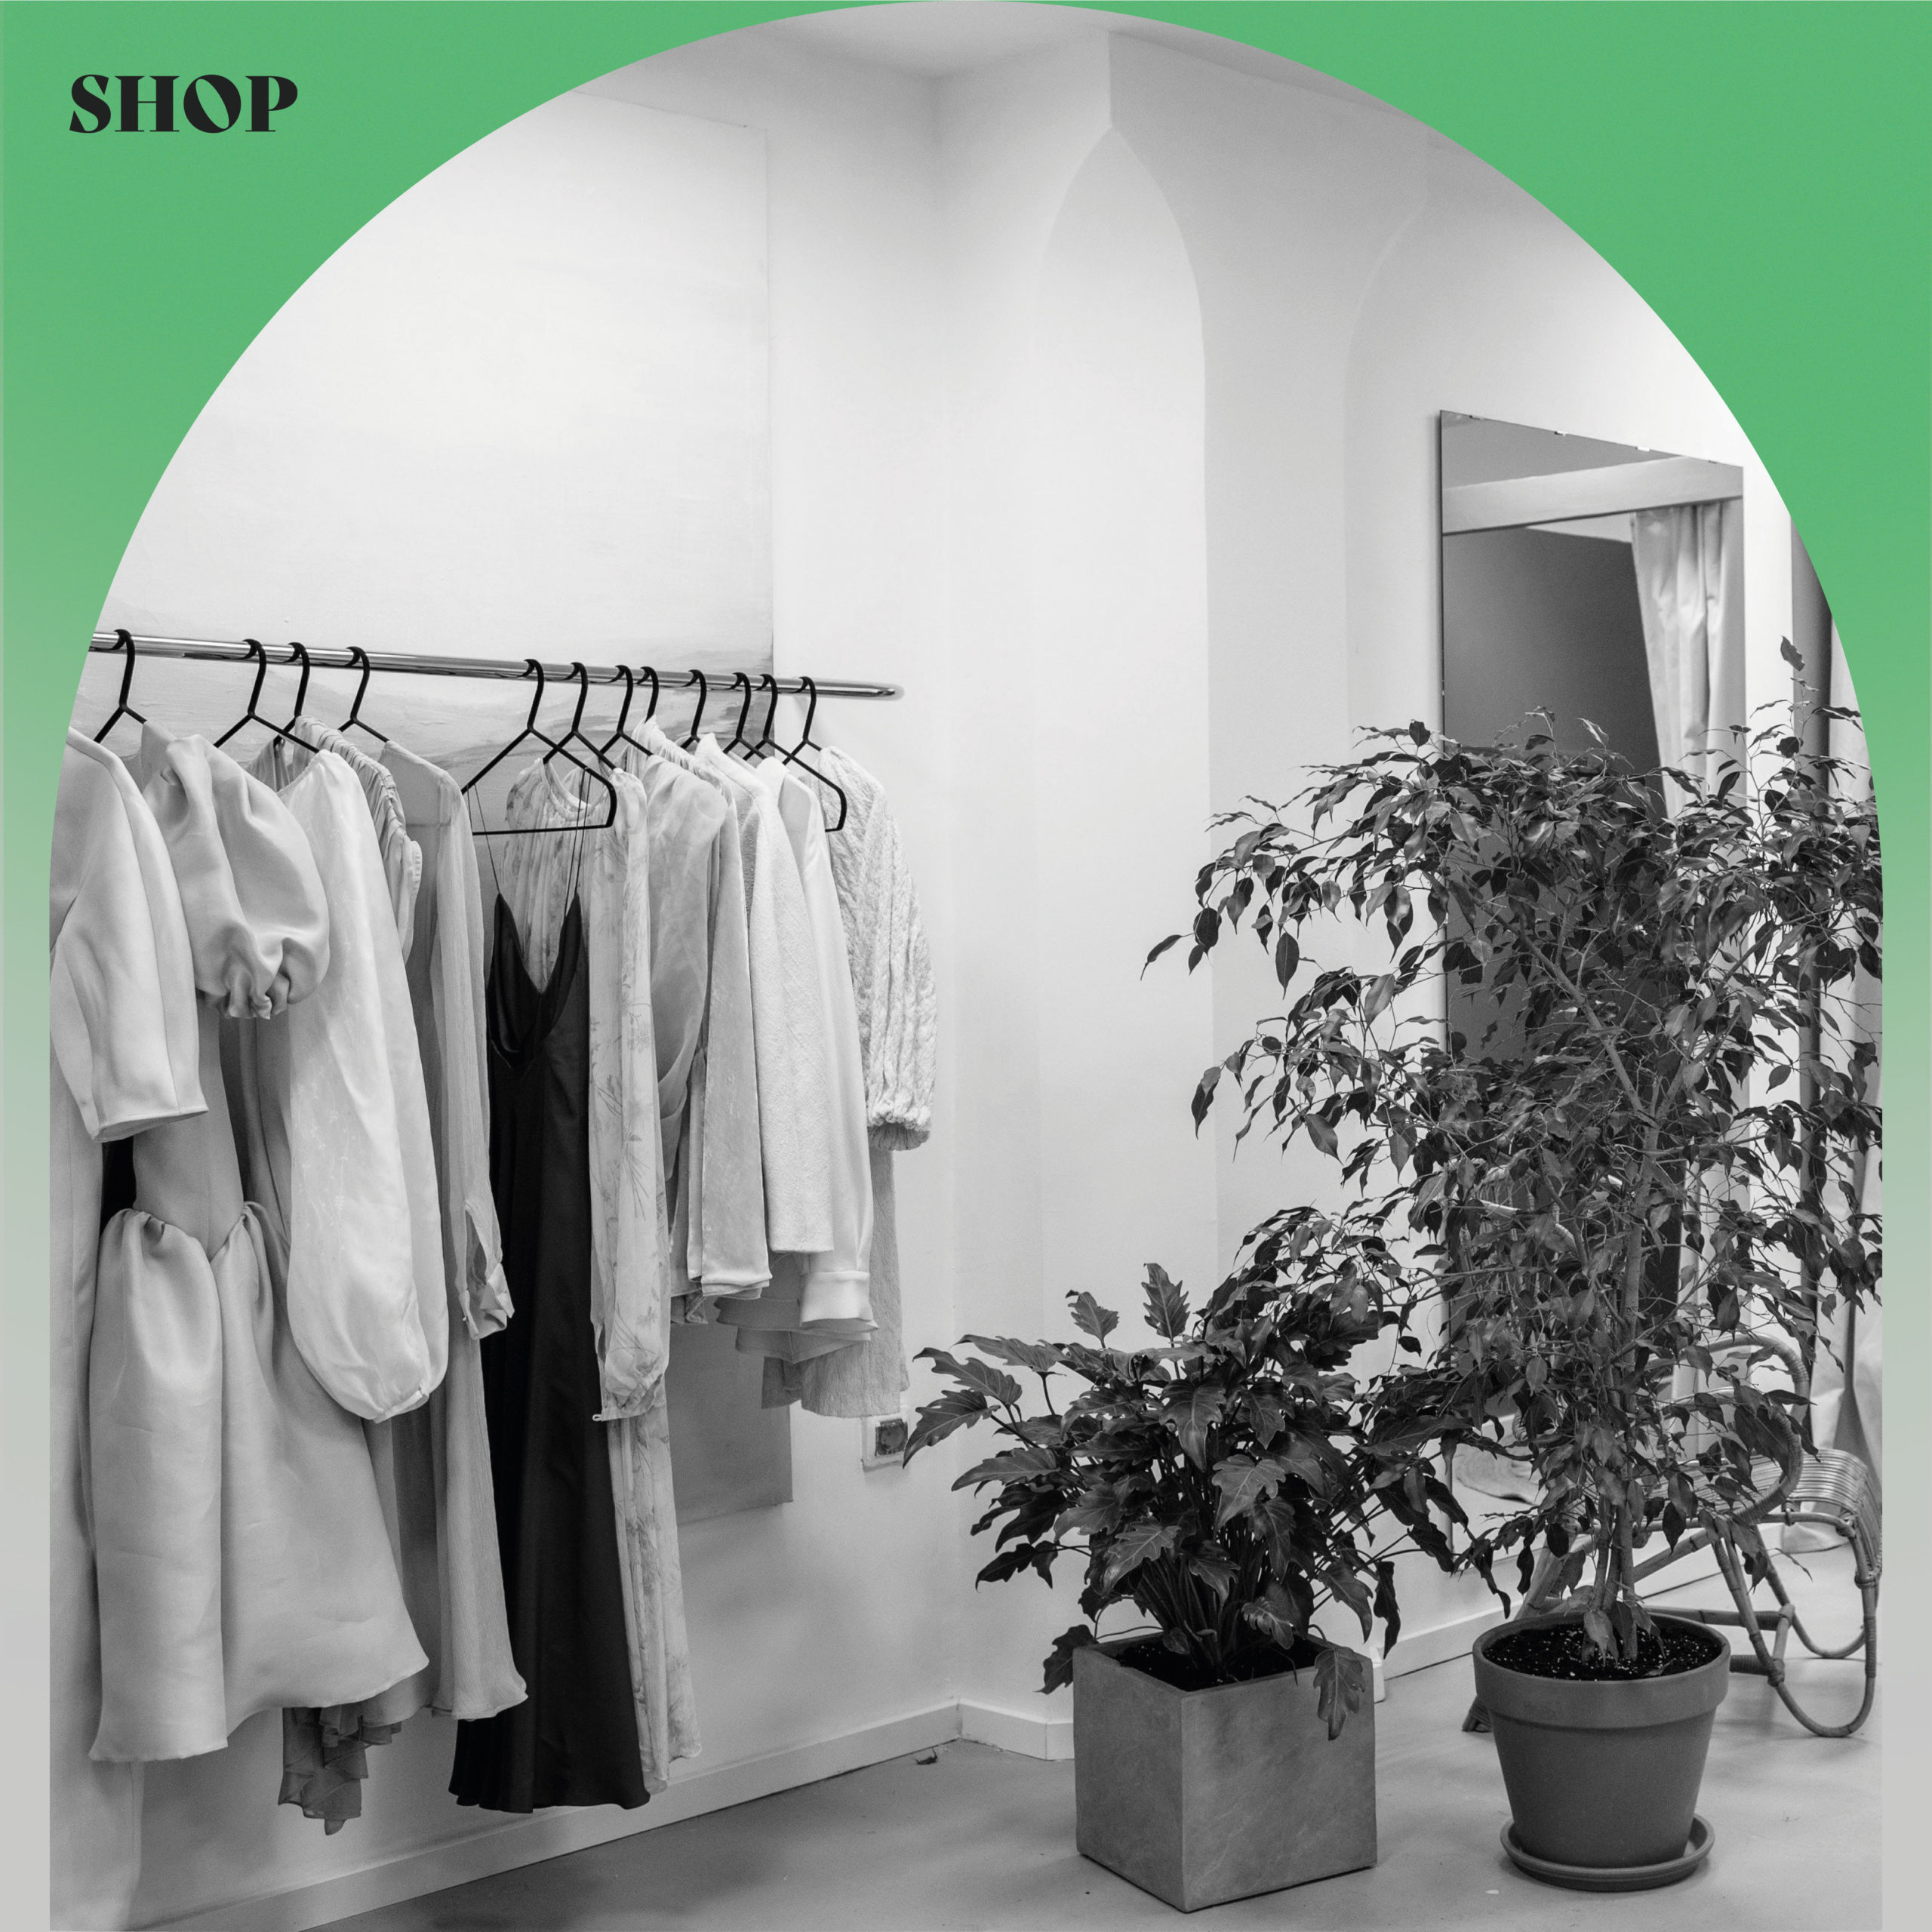 SHOP – Clothes Swap Shop